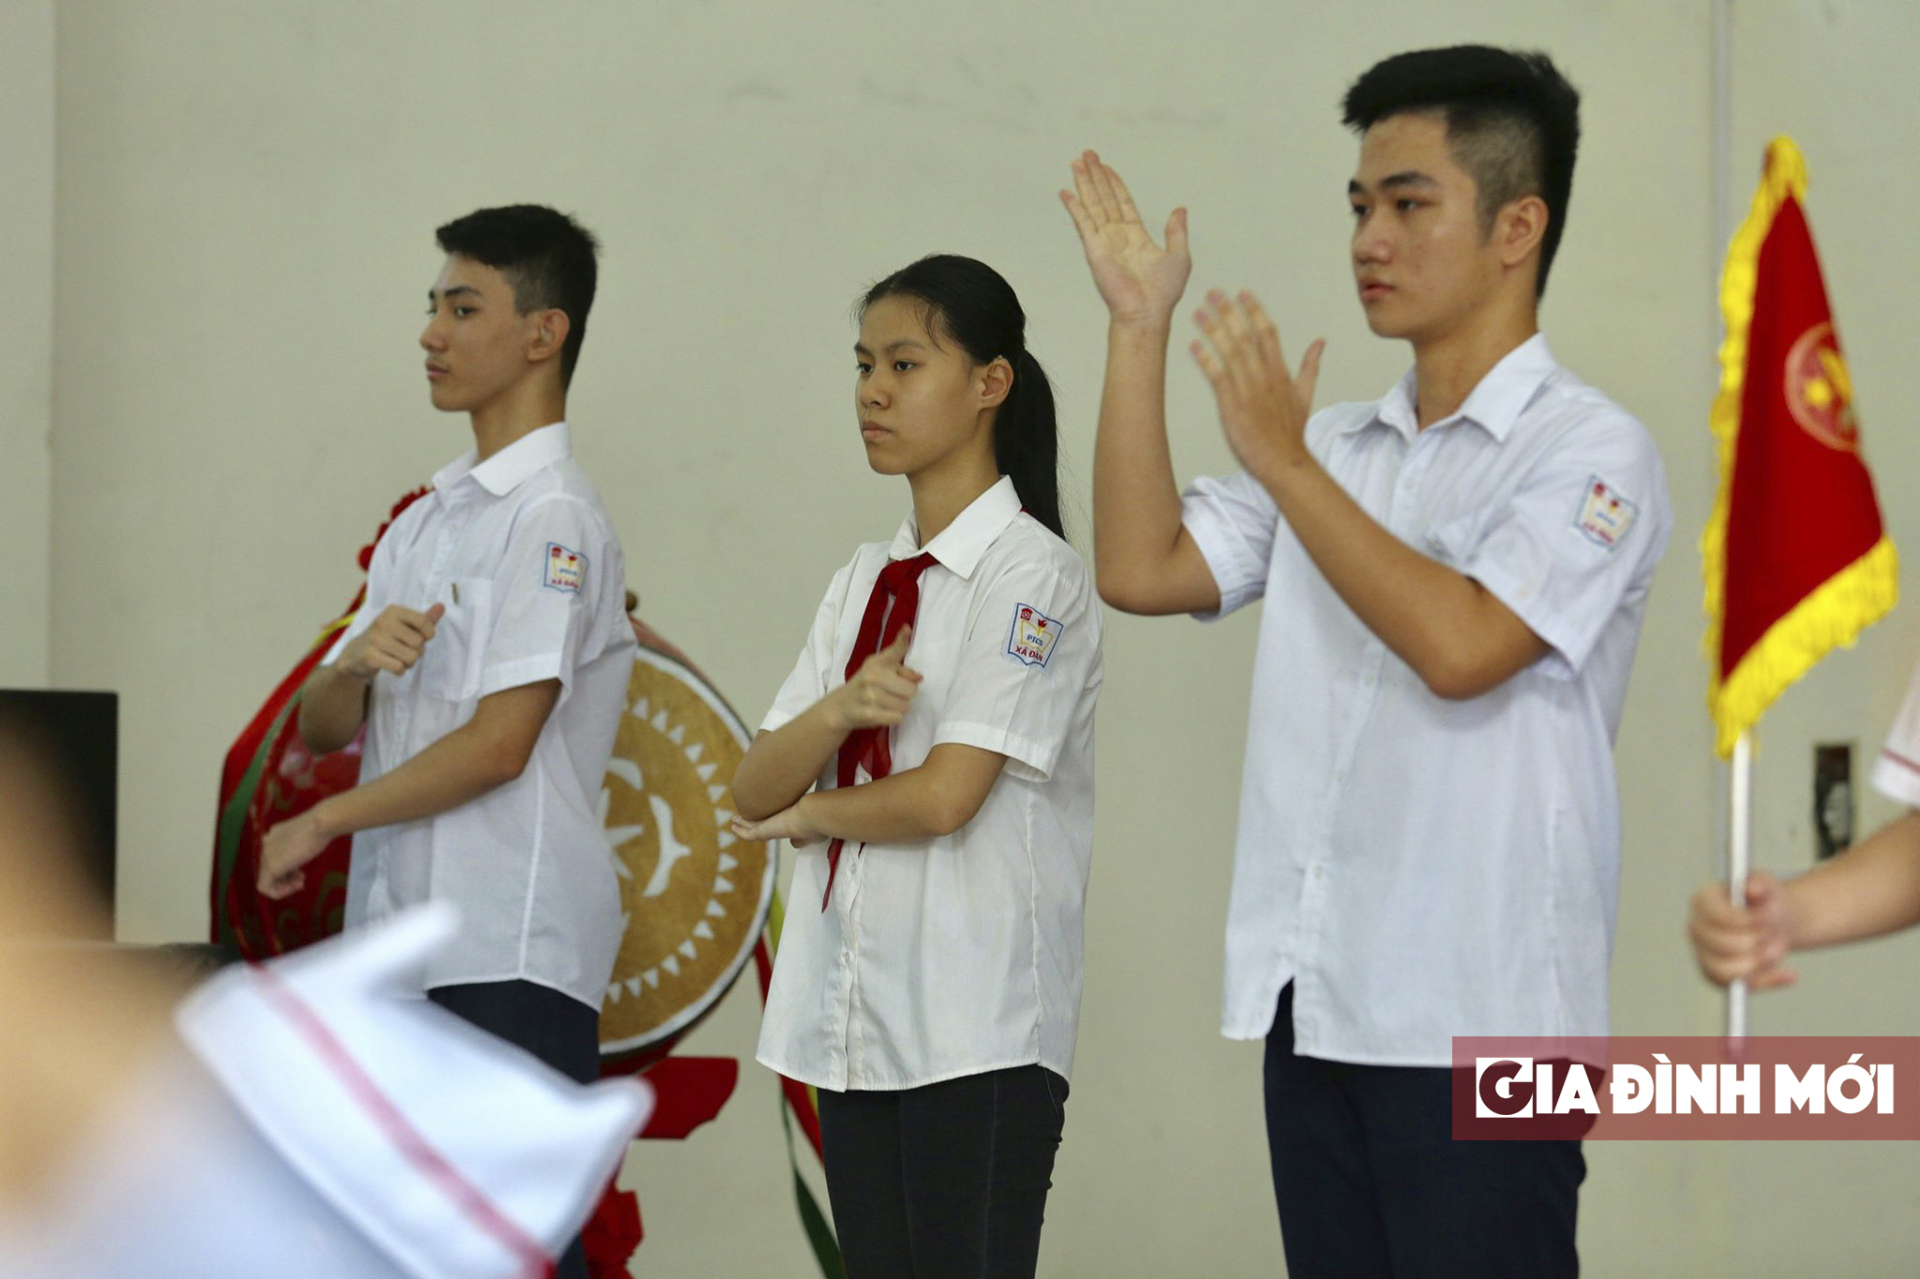   Đội nghi thức hát Quốc ca bằng ngôn ngữ ký hiệu  